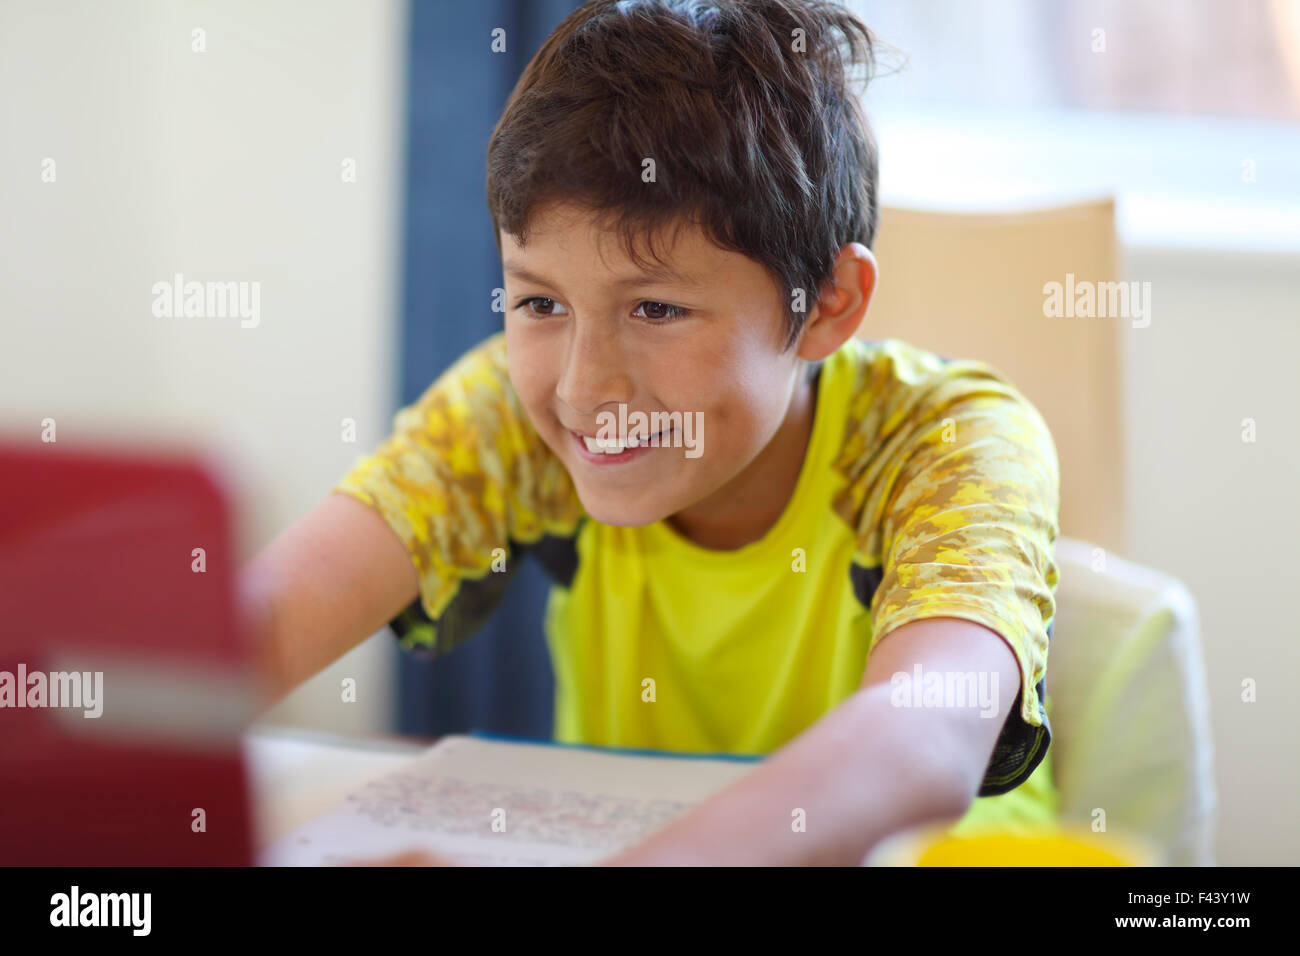 Jeune garçon fait ses devoirs sur un ordinateur - faible profondeur de champ Banque D'Images